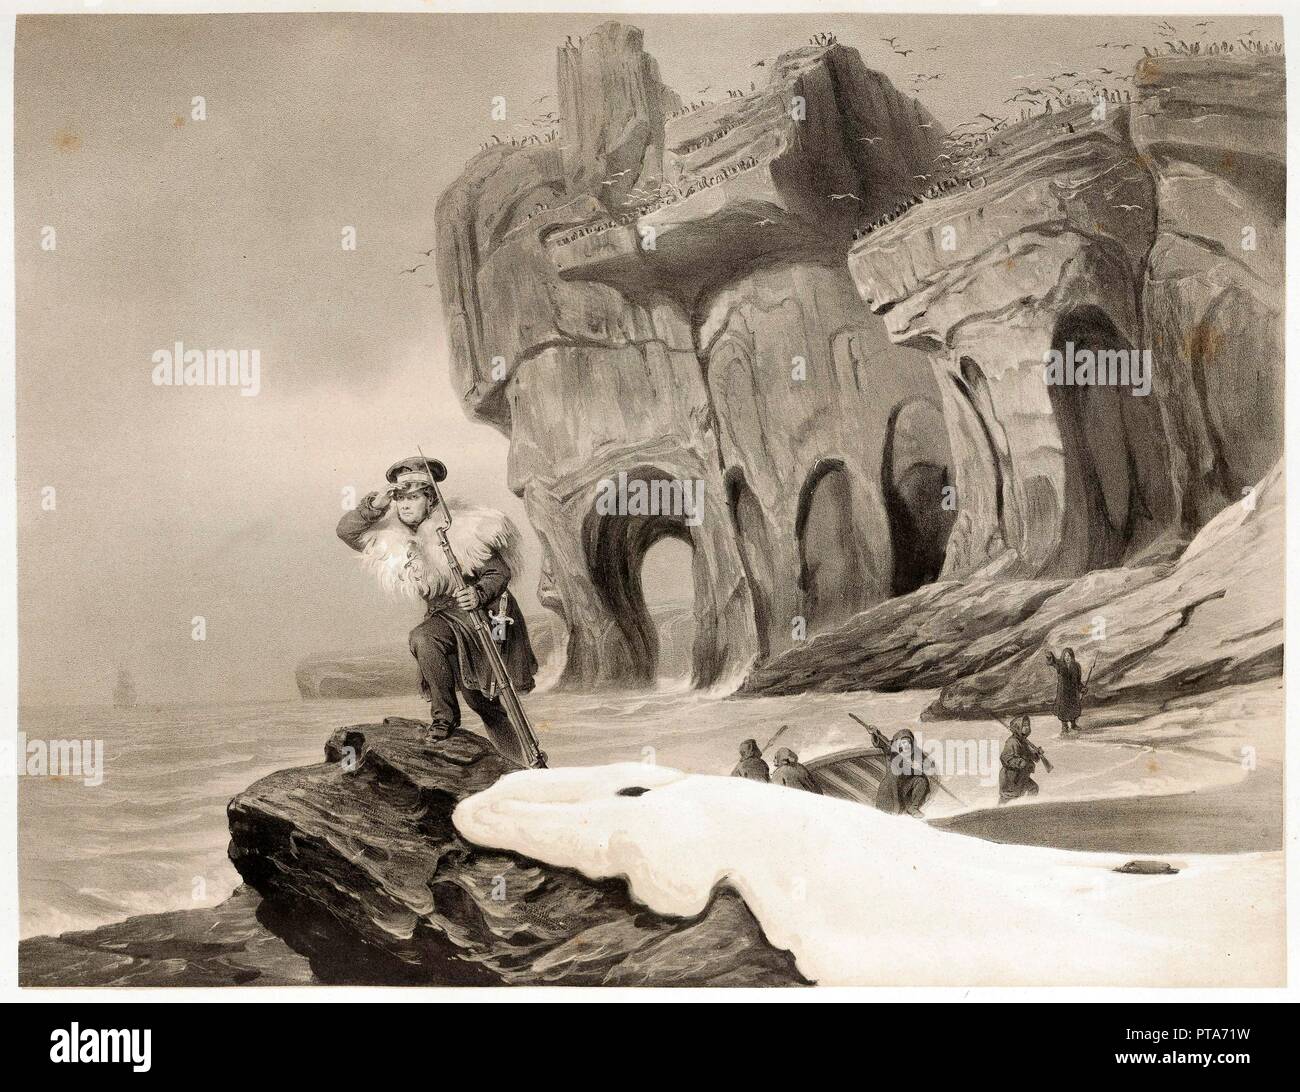 Bear Island from Voyages en Scandinavie, en Laponie, au Spitzberg et aux Feroe, pub. 1852. Creator: Francois Auguste Biard (1798 - 1882). Stock Photo